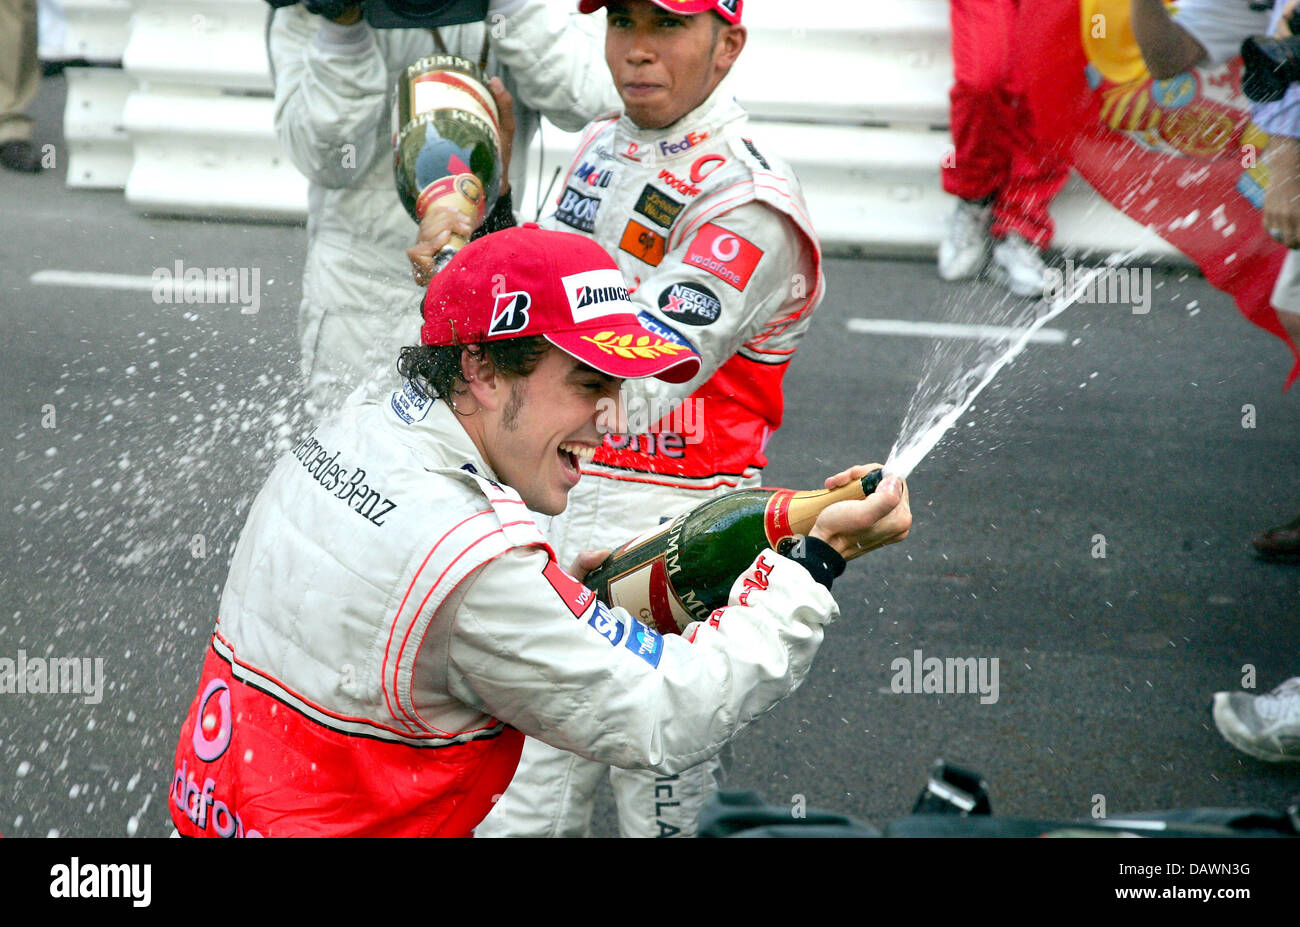 Lo spagnolo pilota di Formula Uno Fernando Alonso (anteriore) e del suo compagno di squadra britannico Lewis Hamilton spruzzare champagne su ogni altro dopo Alonso ha vinto il Gran Premio di Monaco e Hamilton finito al secondo posto a Monte Carlo, Monaco, domenica 27 maggio 2007. Foto: GERO BRELOER Foto Stock